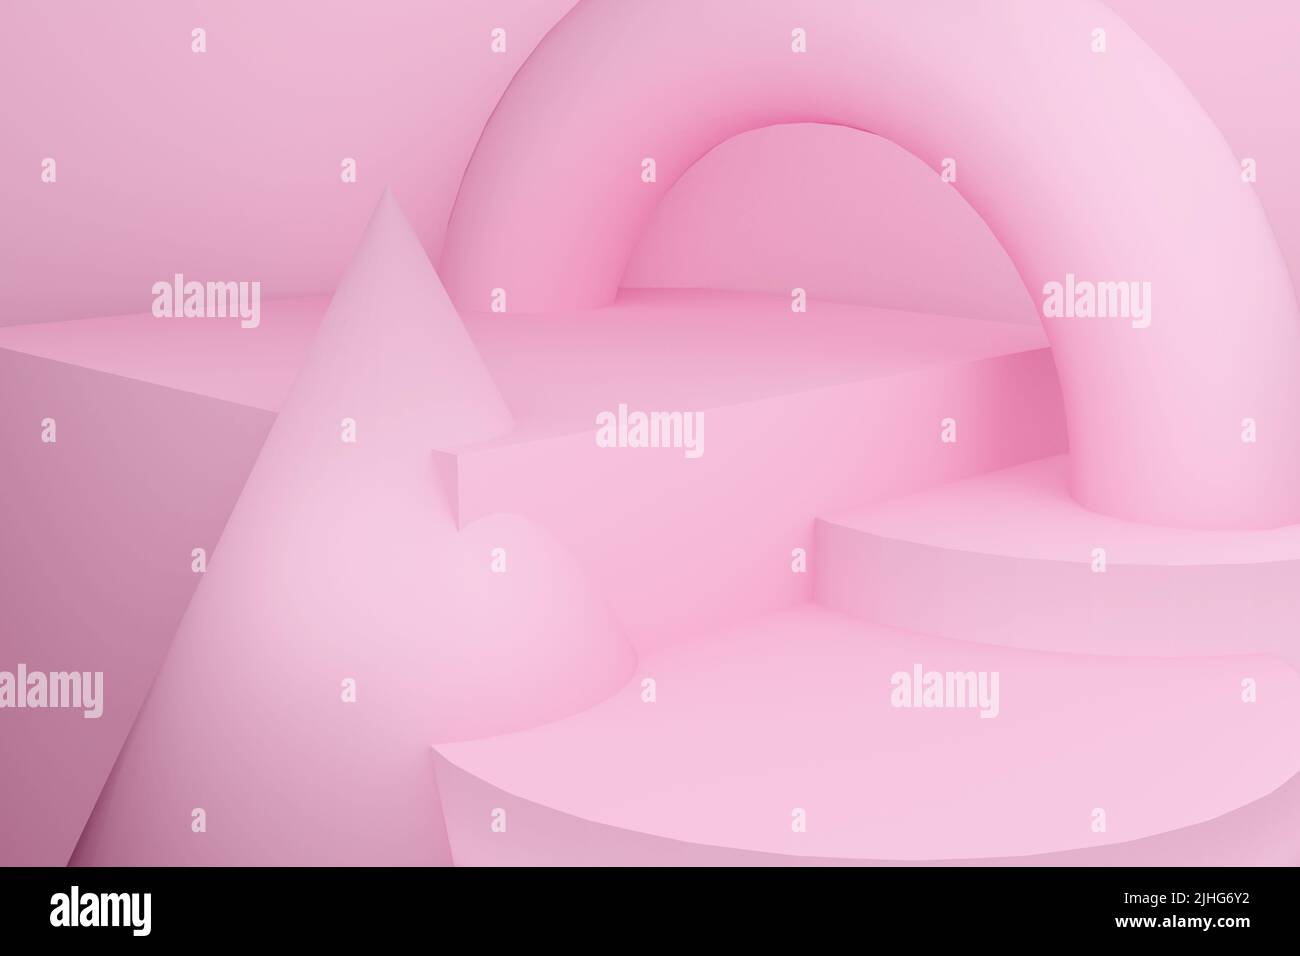 Scena astratta in toni rosa, piedistallo su un cilindro. 3D rendering. Corpi geometrici: Cilindri, cono, cubo, toro. Foto Stock